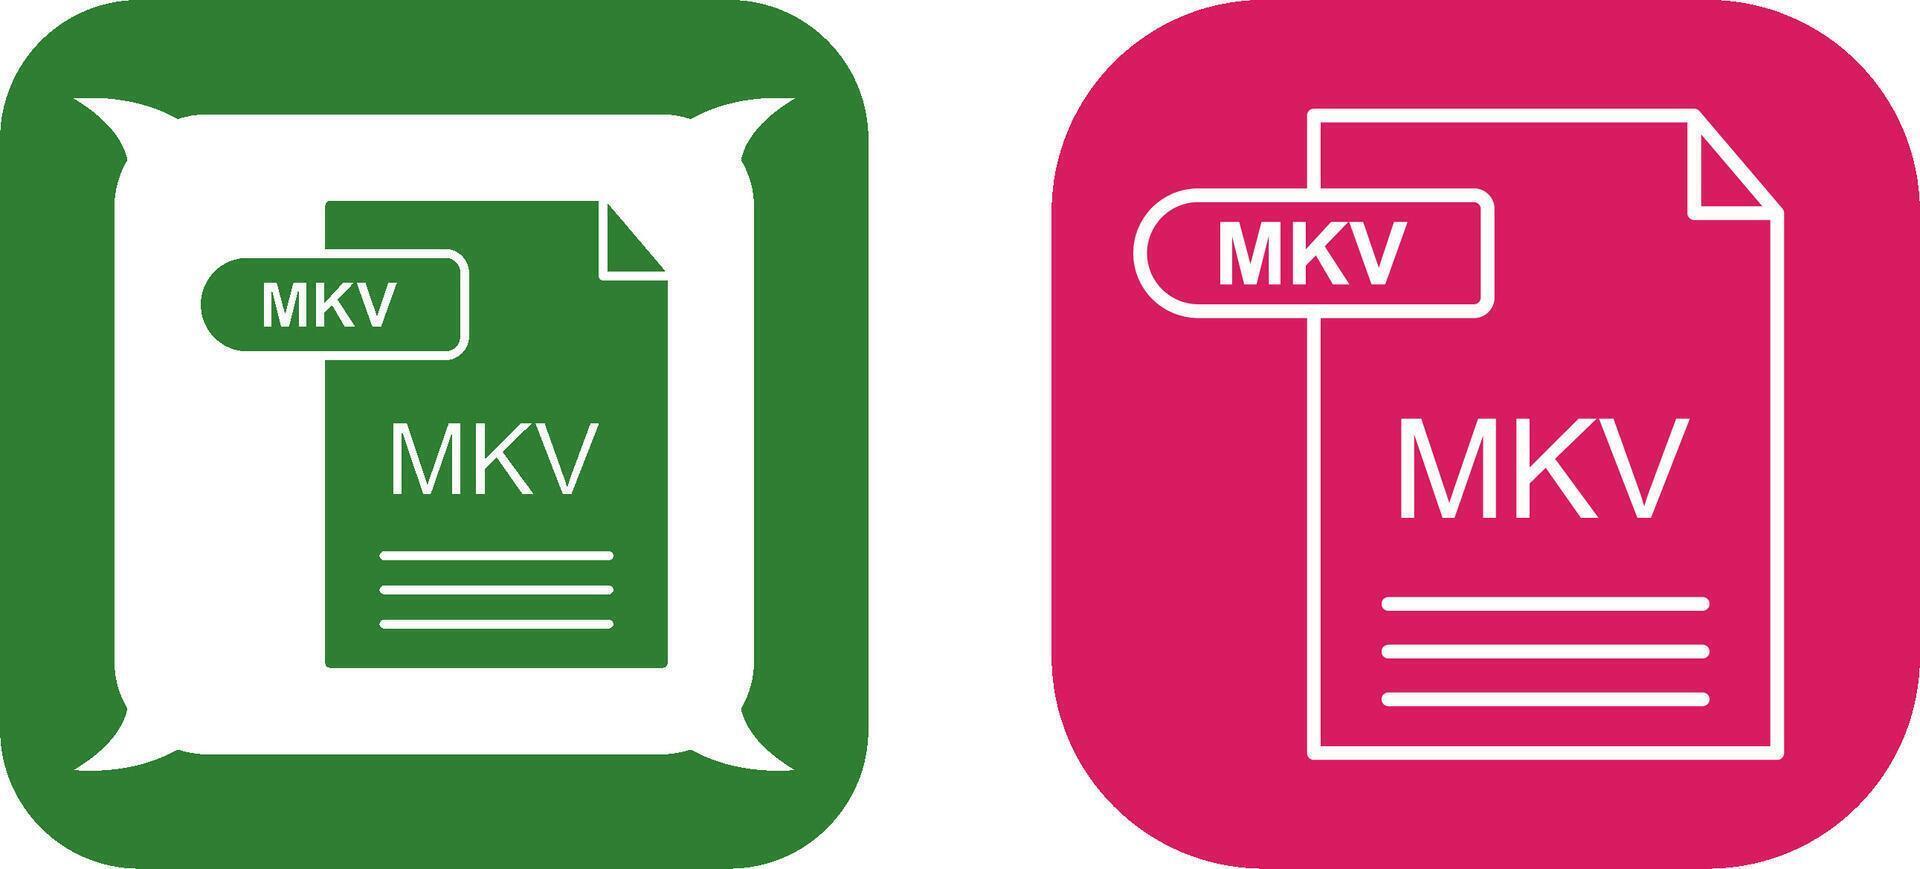 mkv ikon design vektor